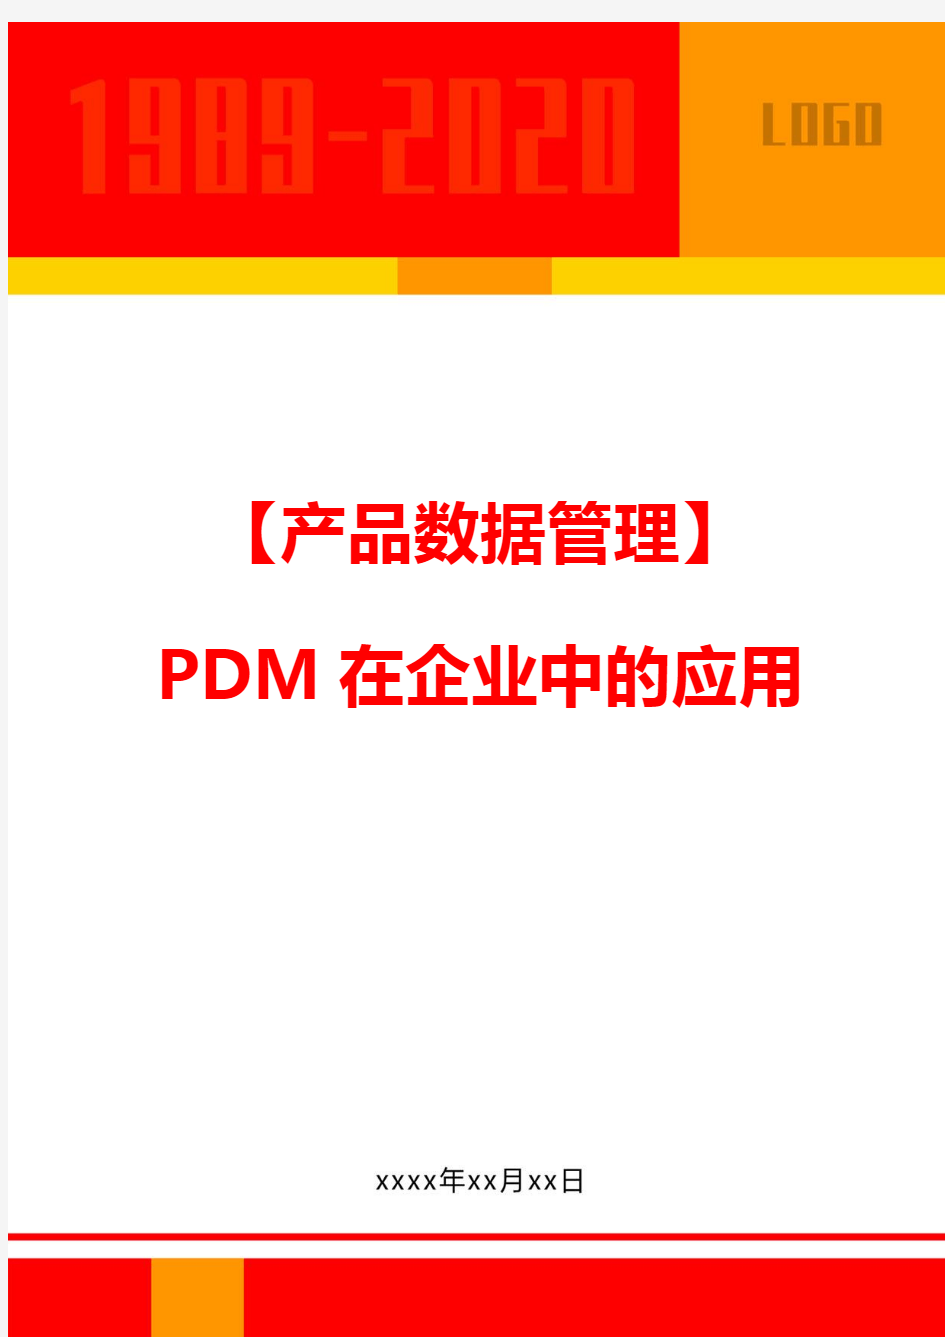 【产品数据管理】PDM在企业中的应用